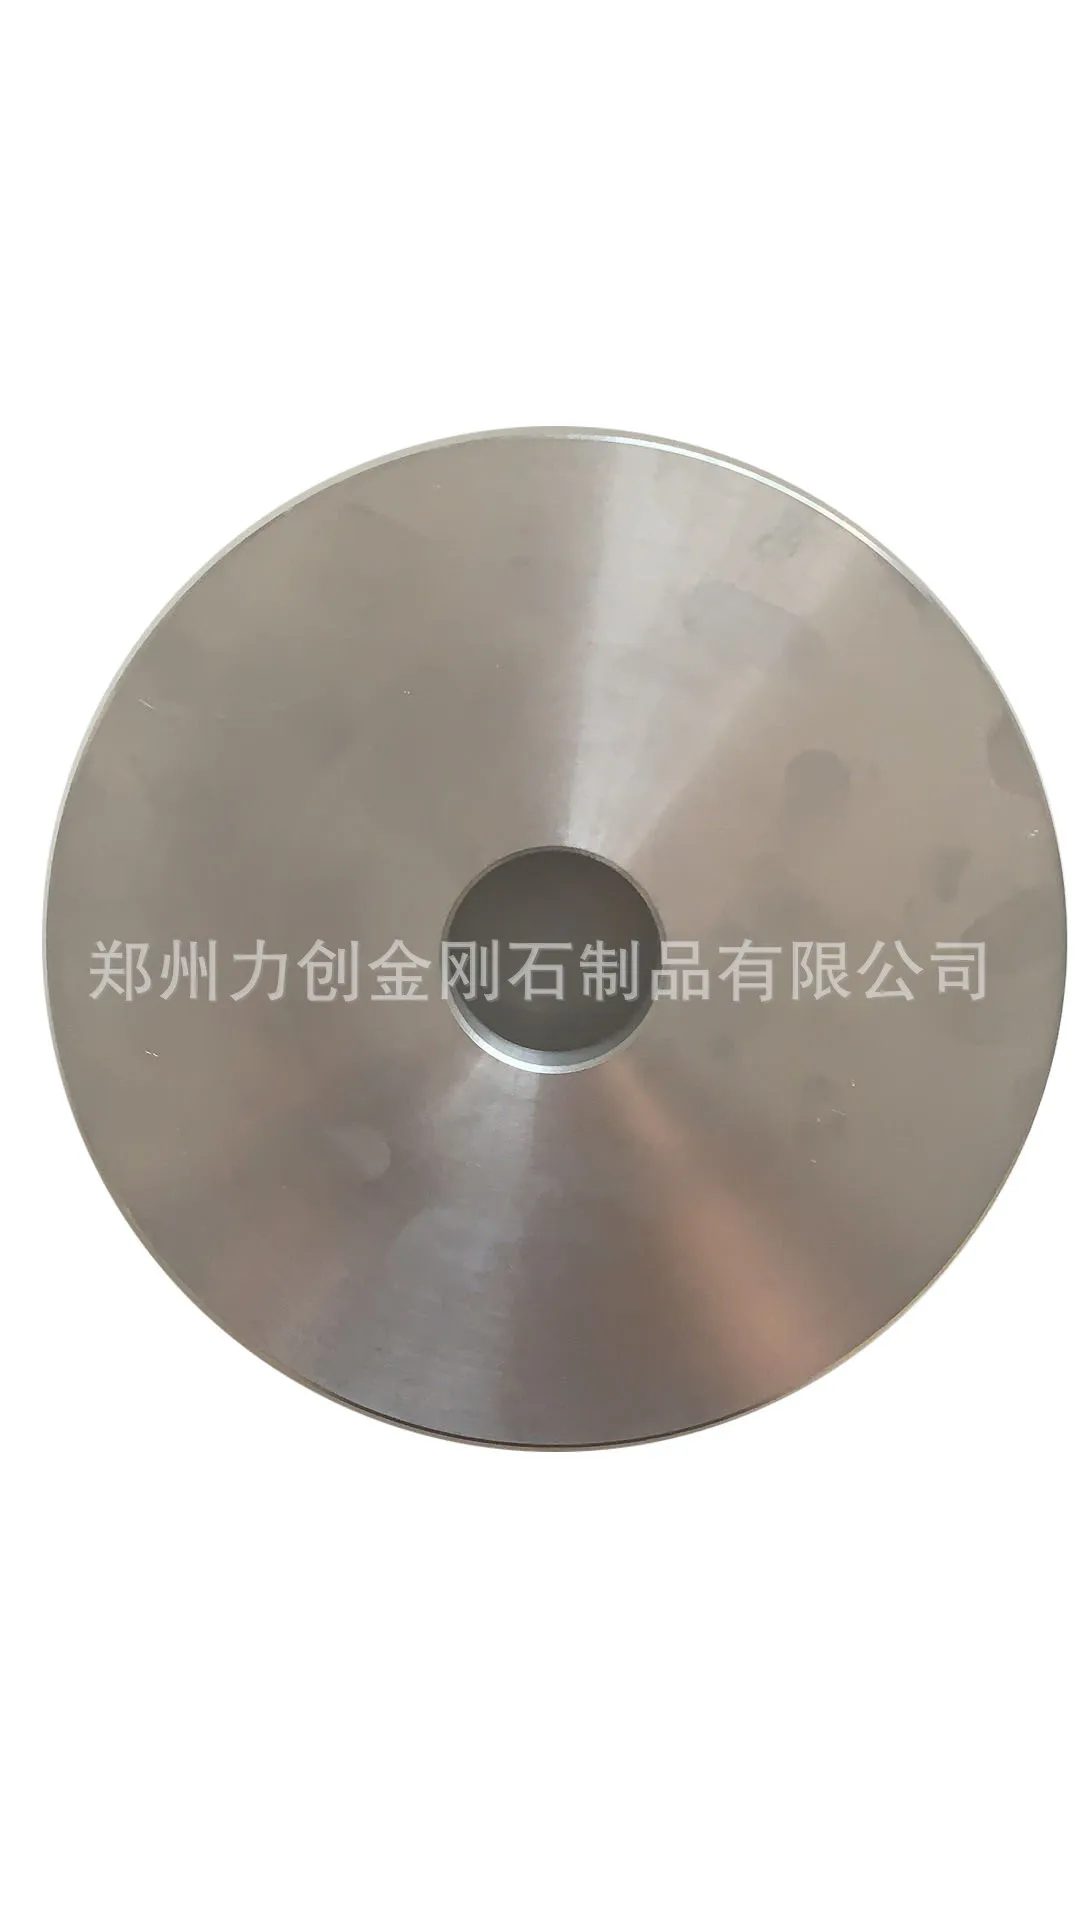 Алмазное Колесо, Алмазный грубый шлифовальный круг для шлифования, лезвие PCBN, композитное CBN от AliExpress RU&CIS NEW